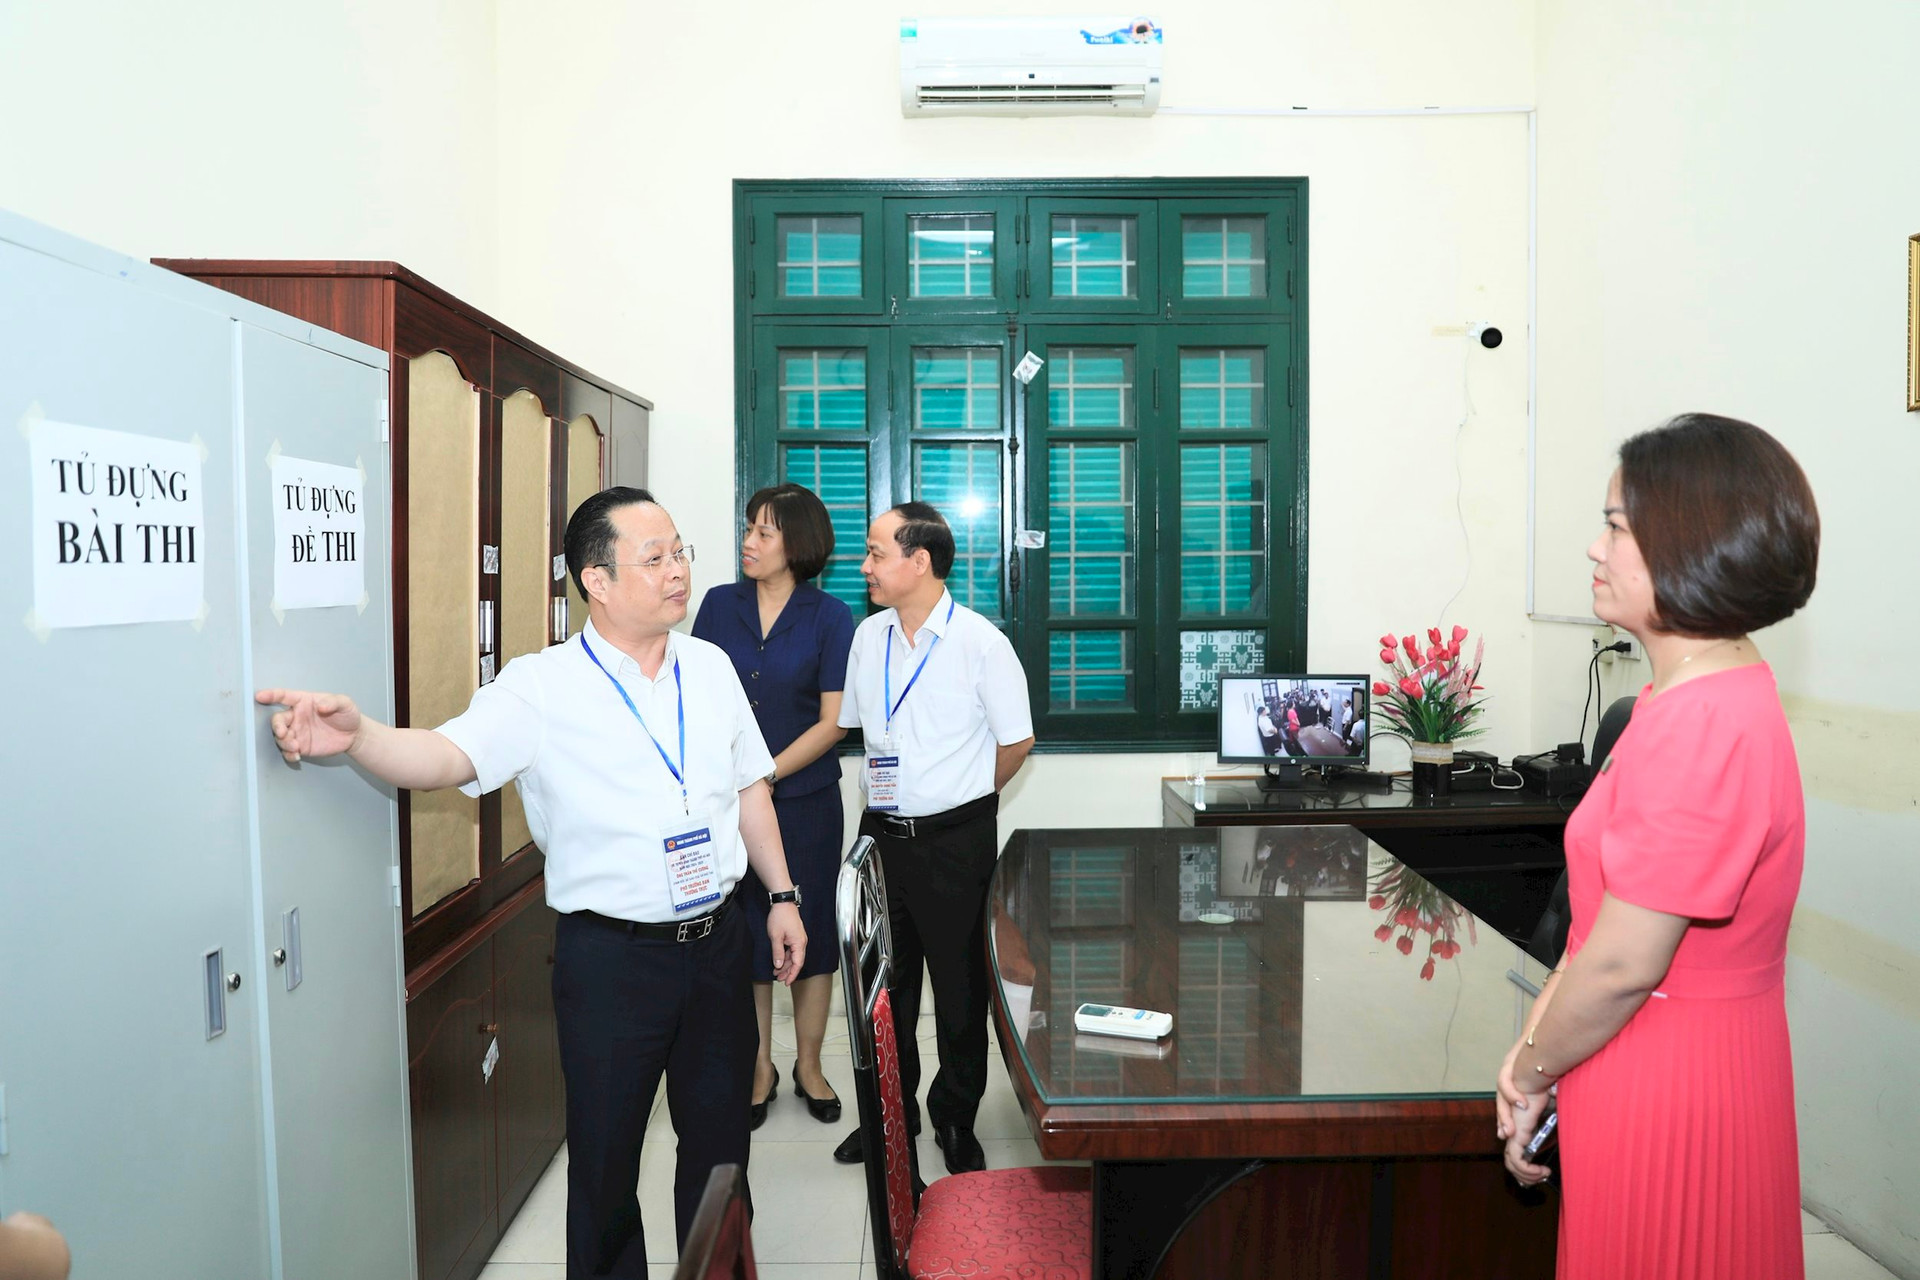 Sở GD-ĐT Hà Nội kiểm tra phòng bảo quản đề và bài thi tại Trường THPT Thăng Long. Ảnh: Quang Thái